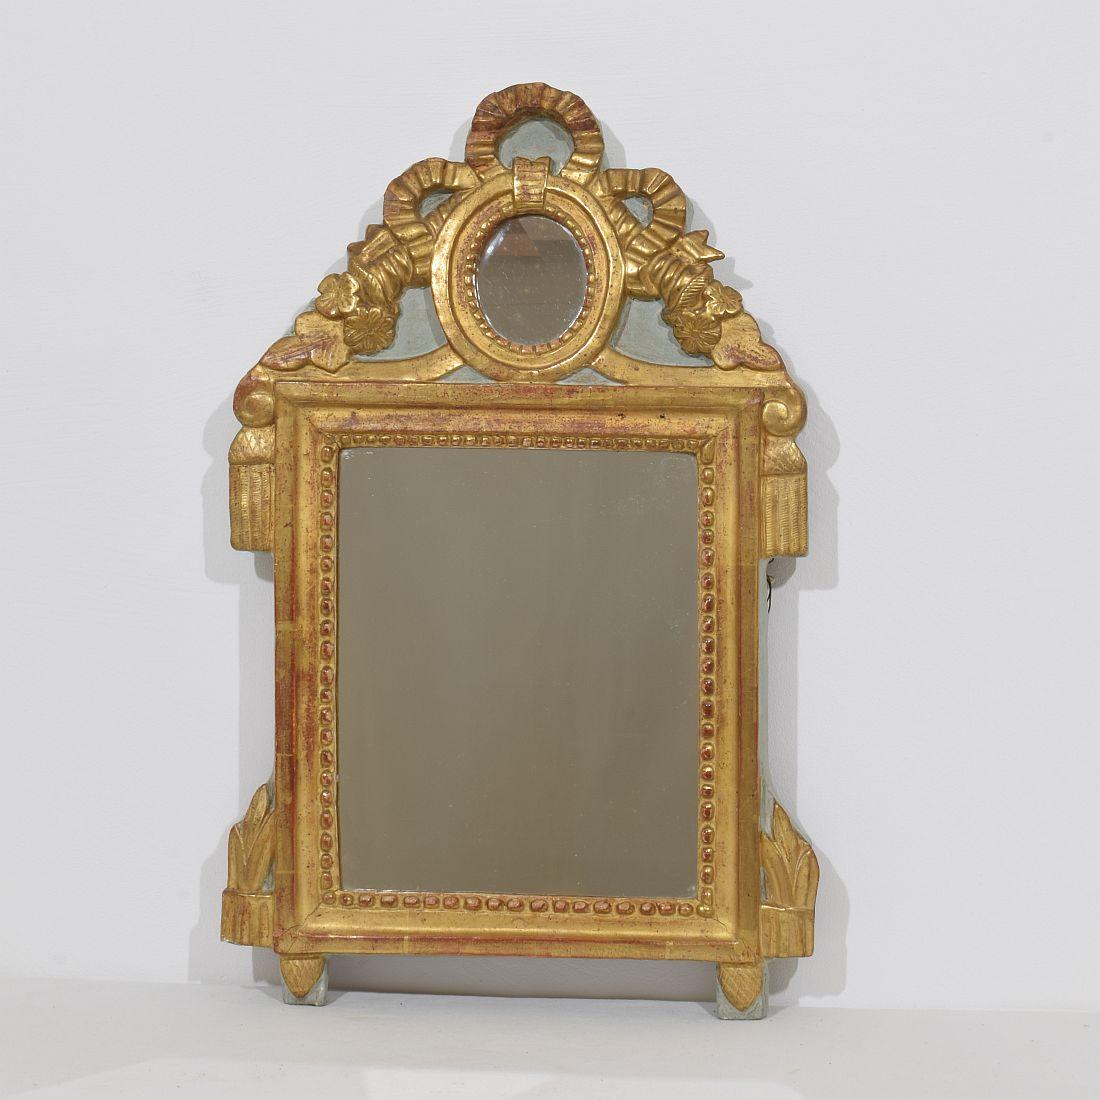 Kleiner Spiegel aus vergoldetem Holz im Louis-XVI-Stil. Ein wunderschönes Stück aus der Zeit.
Frankreich, ca. 1760-1790.
Verwittert, kleine Schäden und alte Reparaturen.